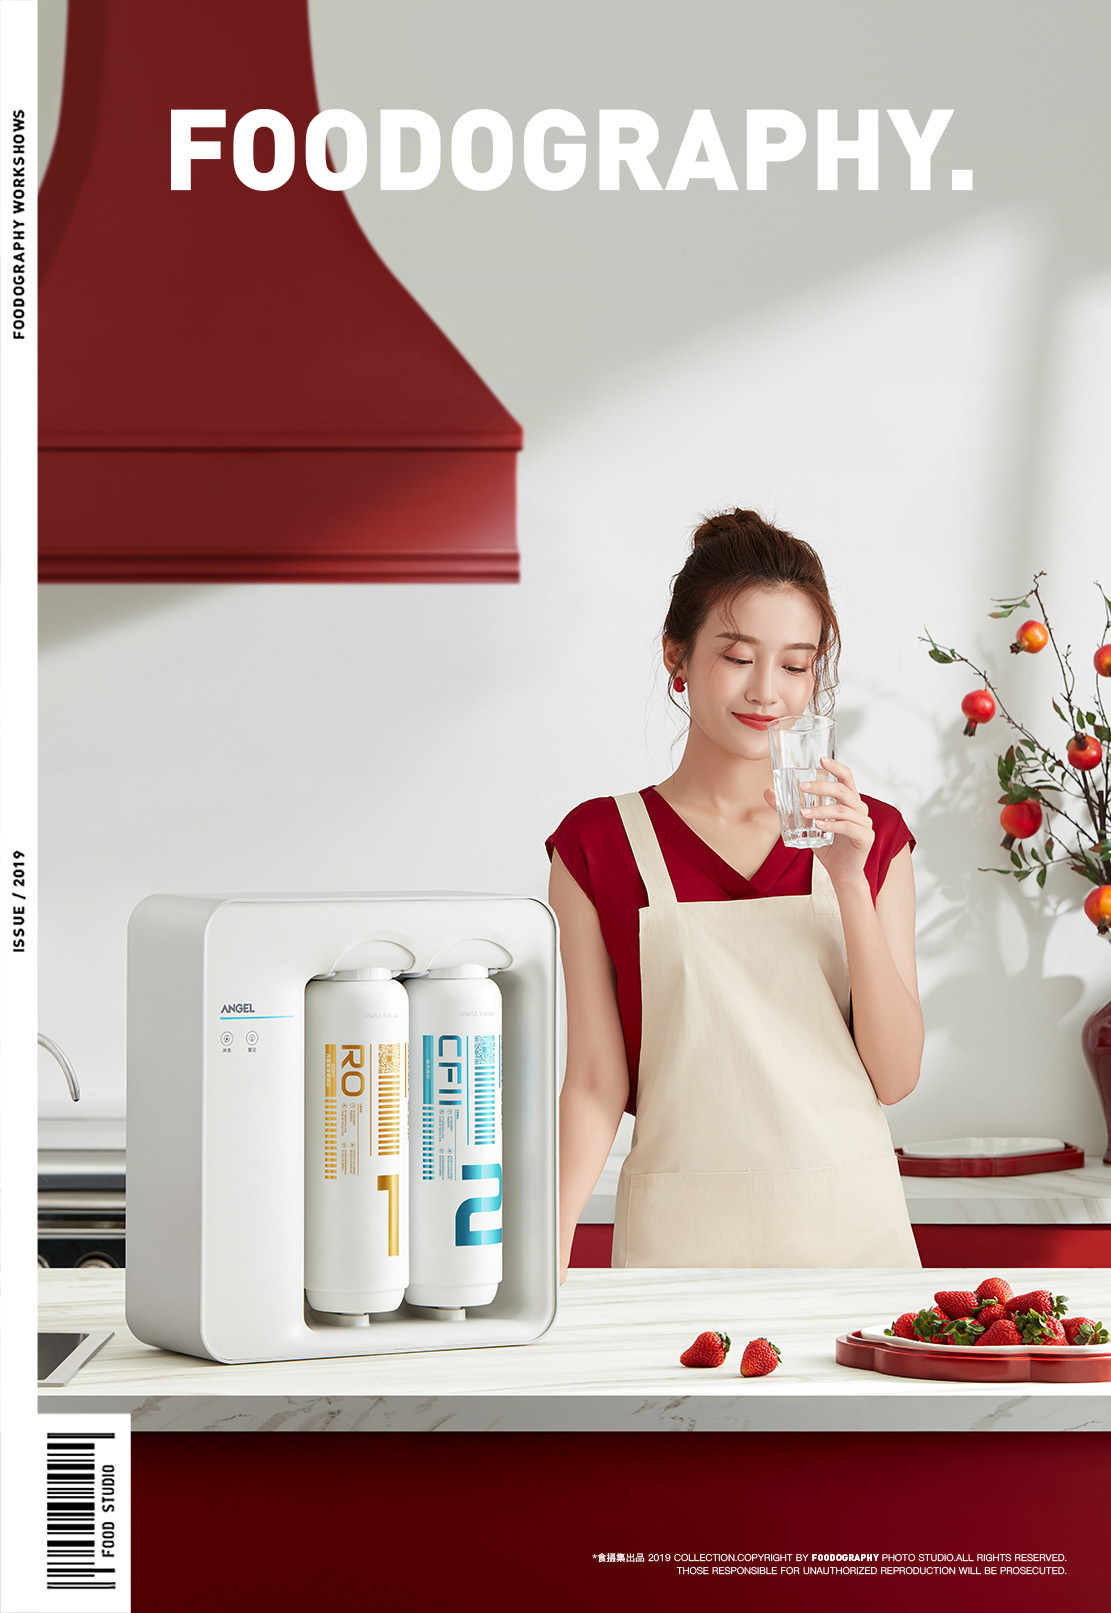 Chinese kitchen kitchen appliances red water water purifier 净水器 厨房小家电 厨房电器 安吉尔